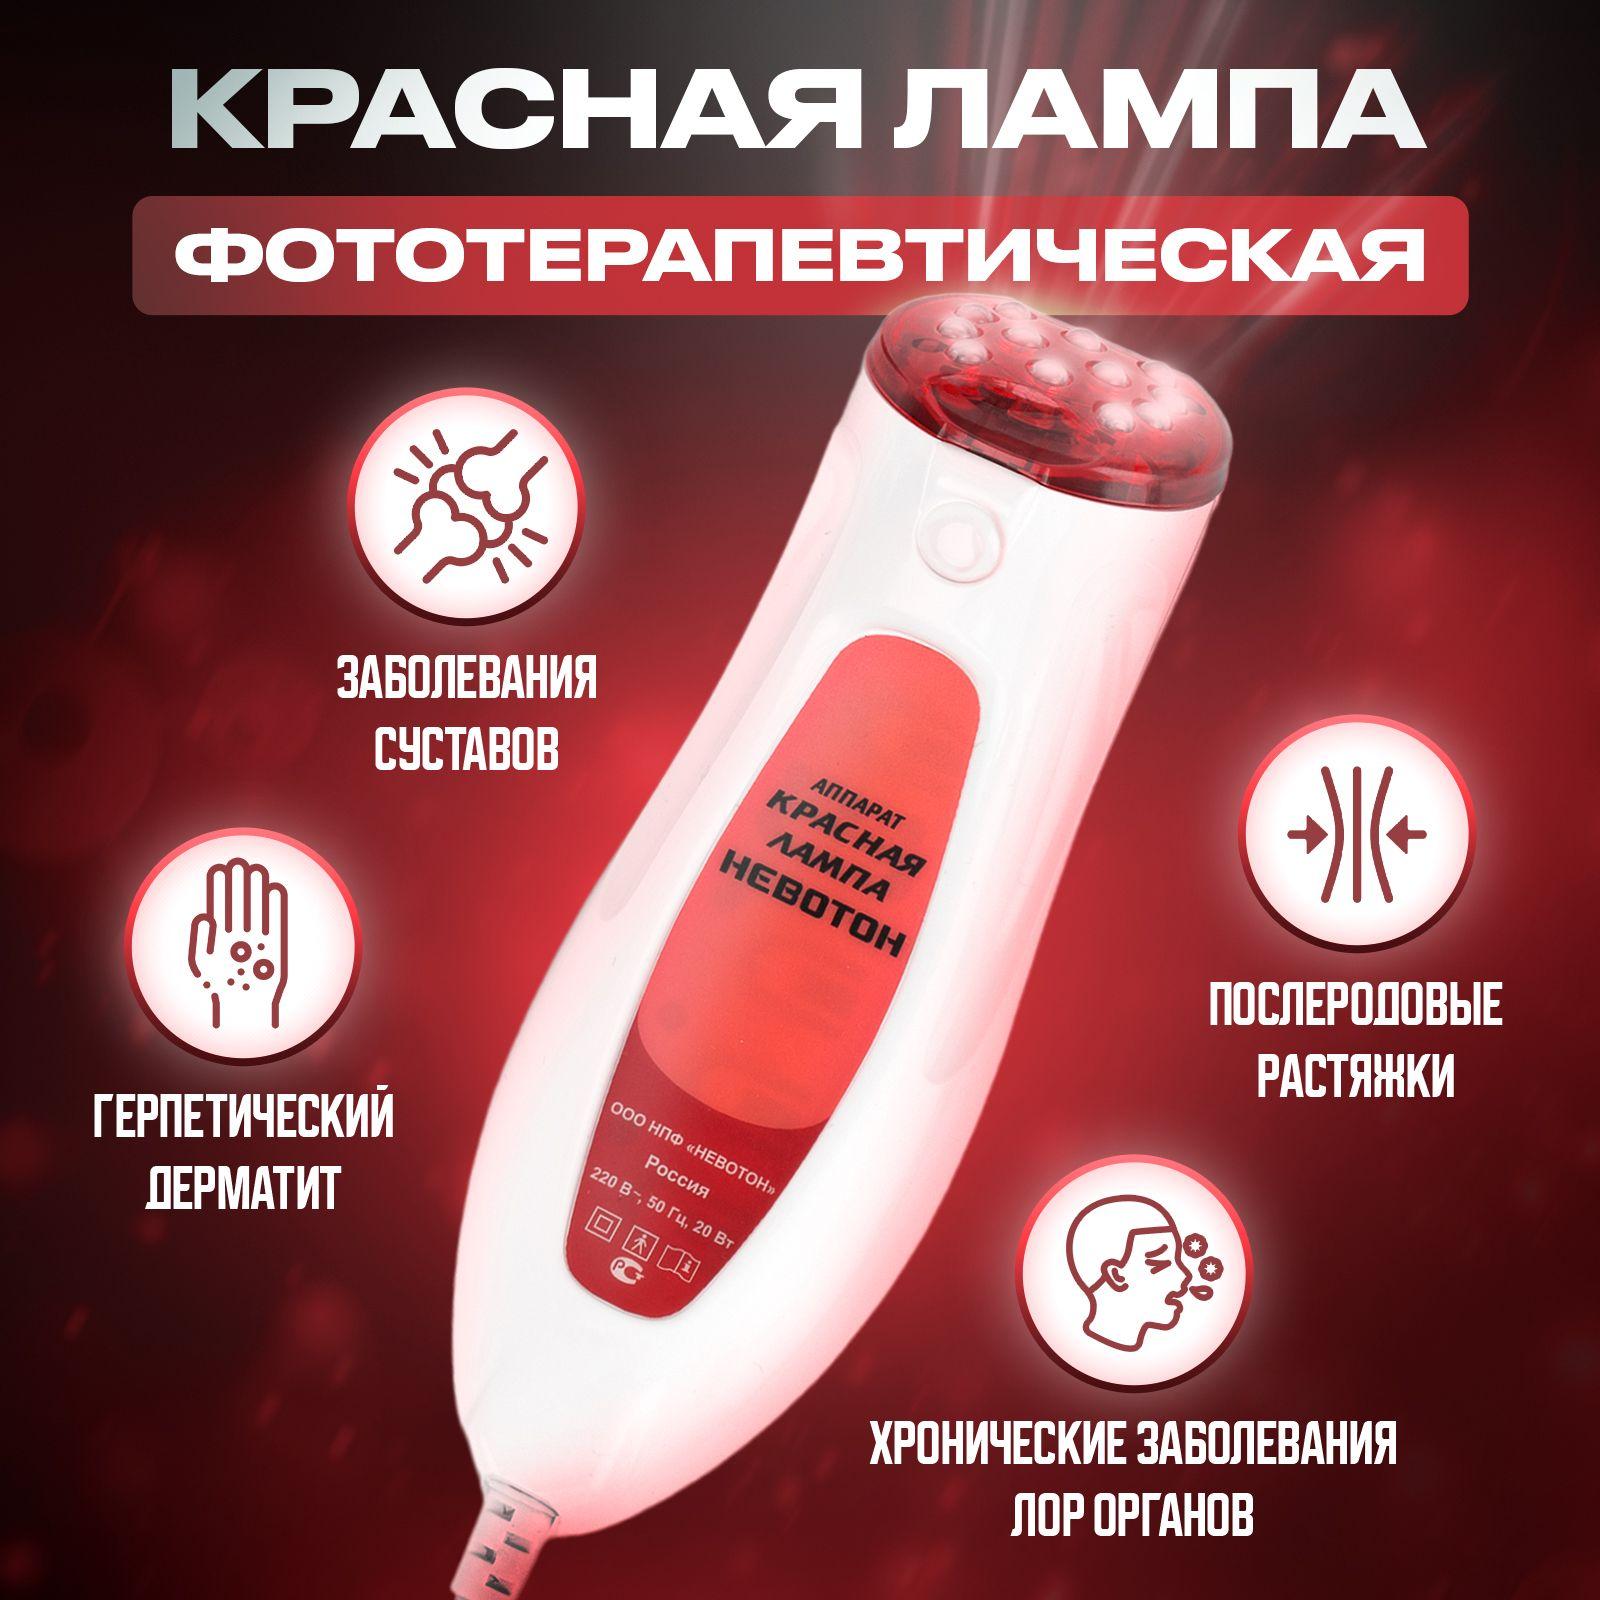 Красная лампа медицинская НЕВОТОН для лечения суставов, аппарат для фототерапии